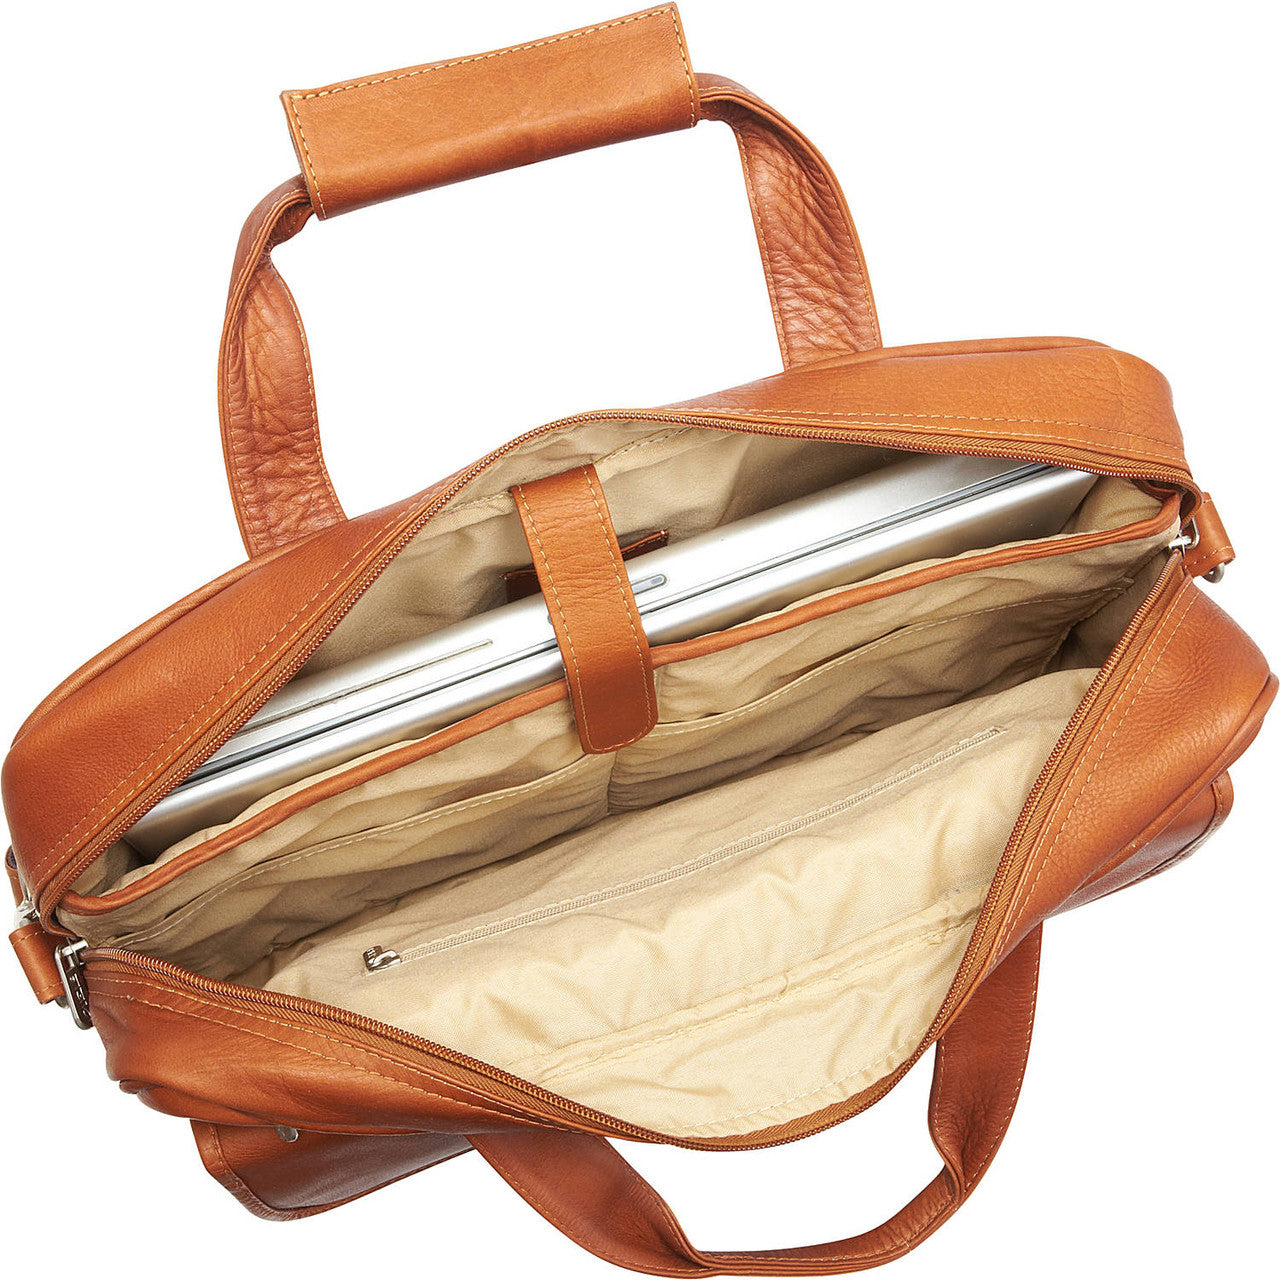 Slim Top-Zip Briefcase - Leather Loom